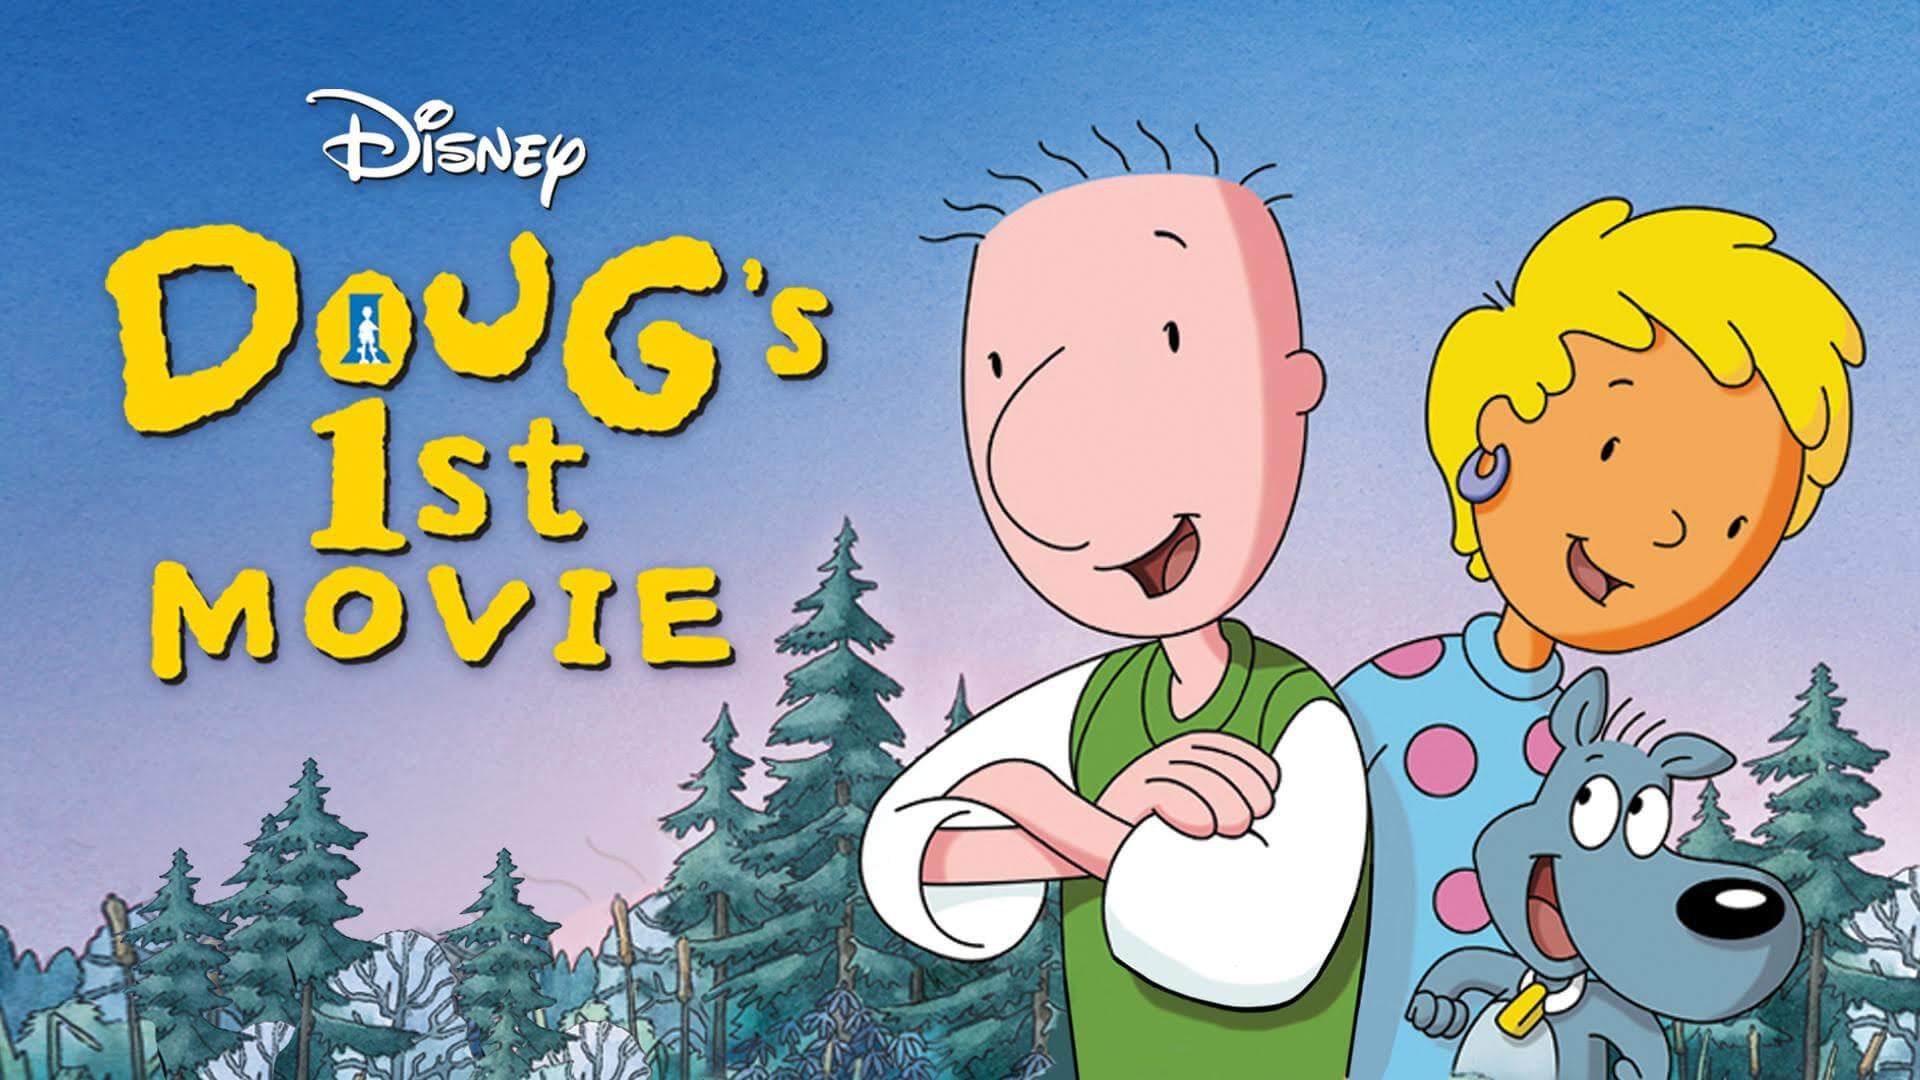 Doug's 1st Movie (1999)